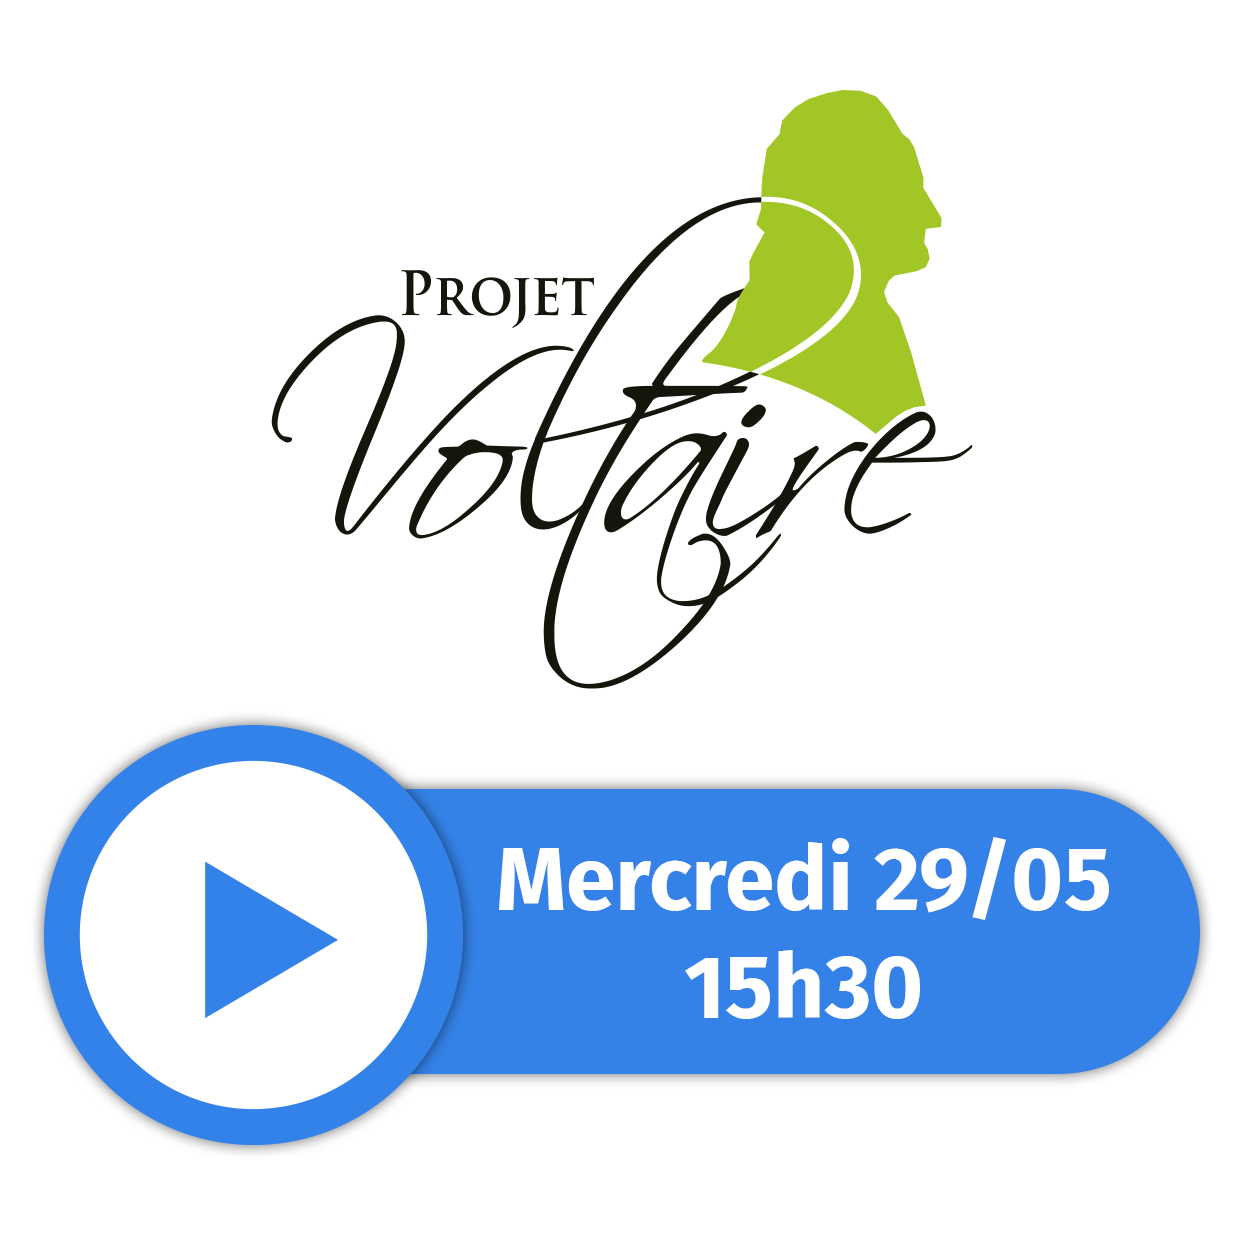 Projet Voltaire